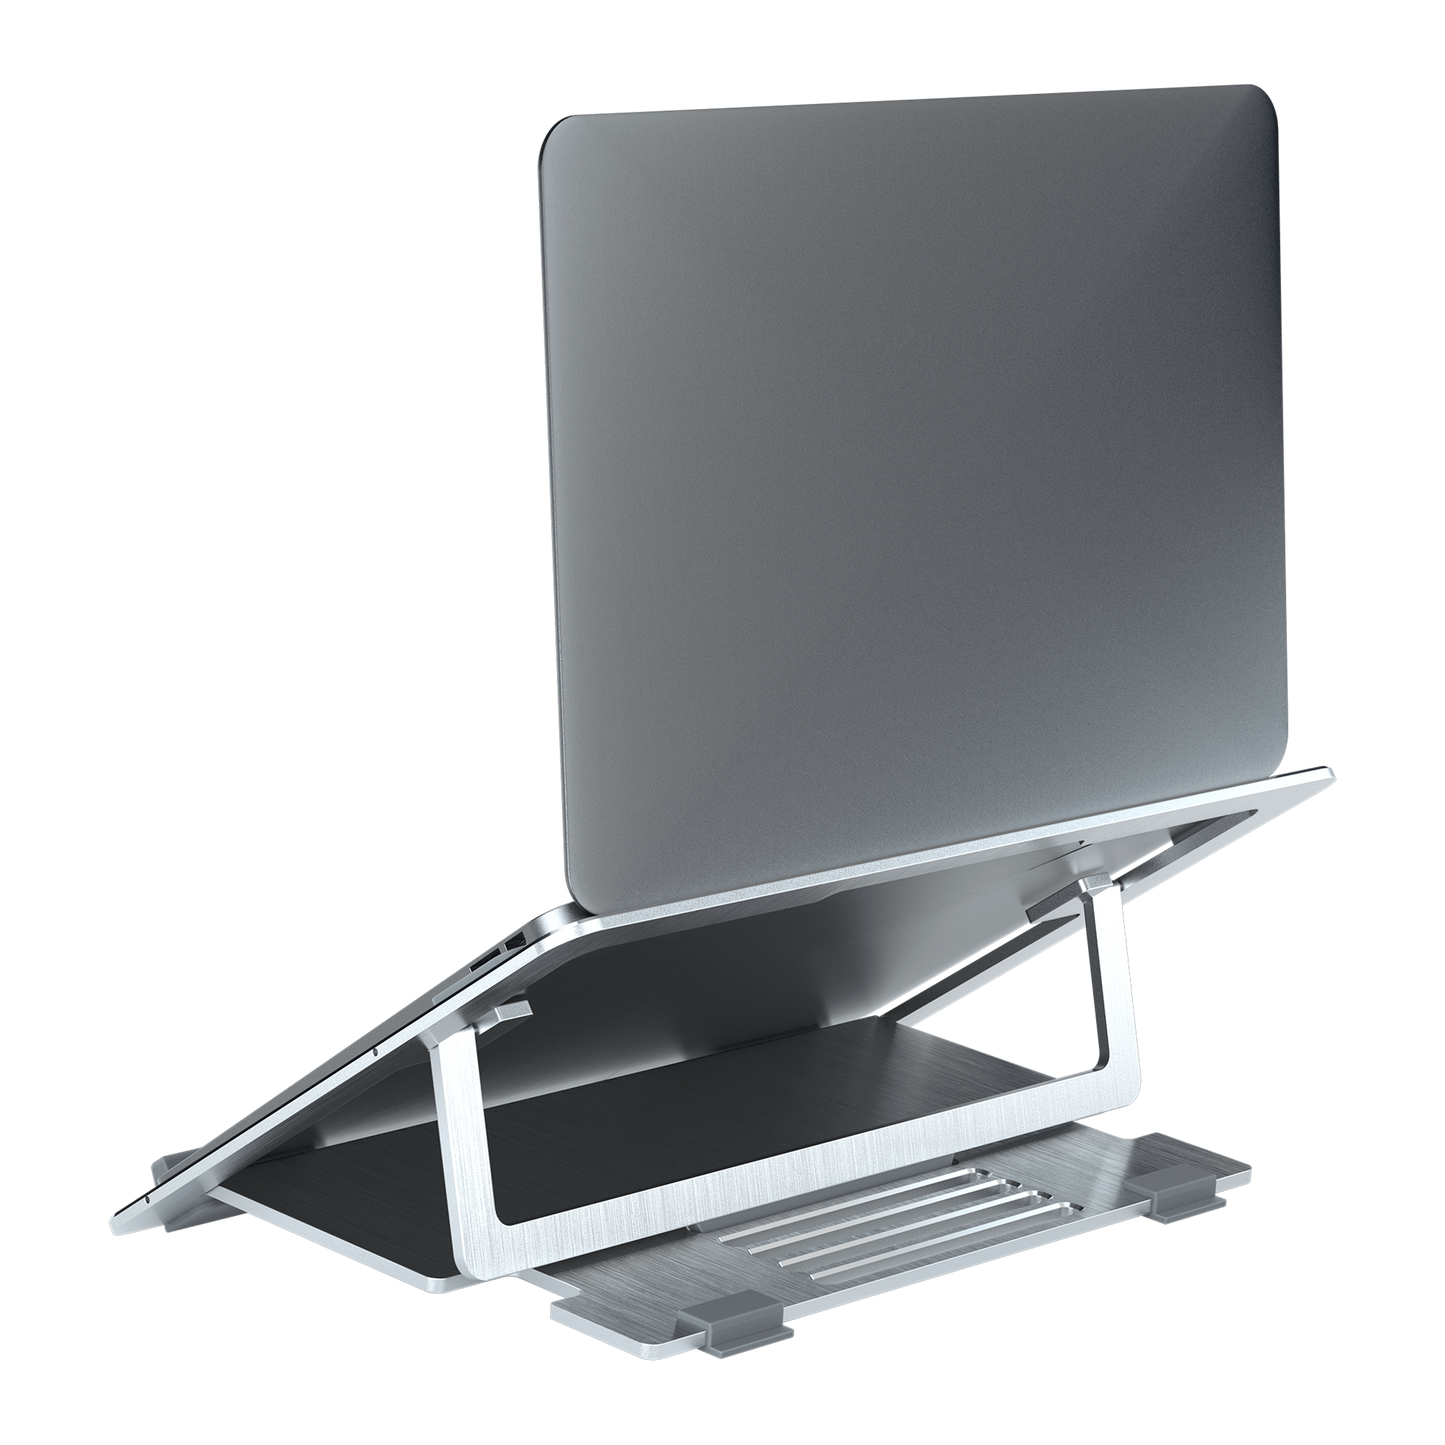 Cooler Master Ergostand Air - Supporto per notebook da 15" in alluminio - Argento